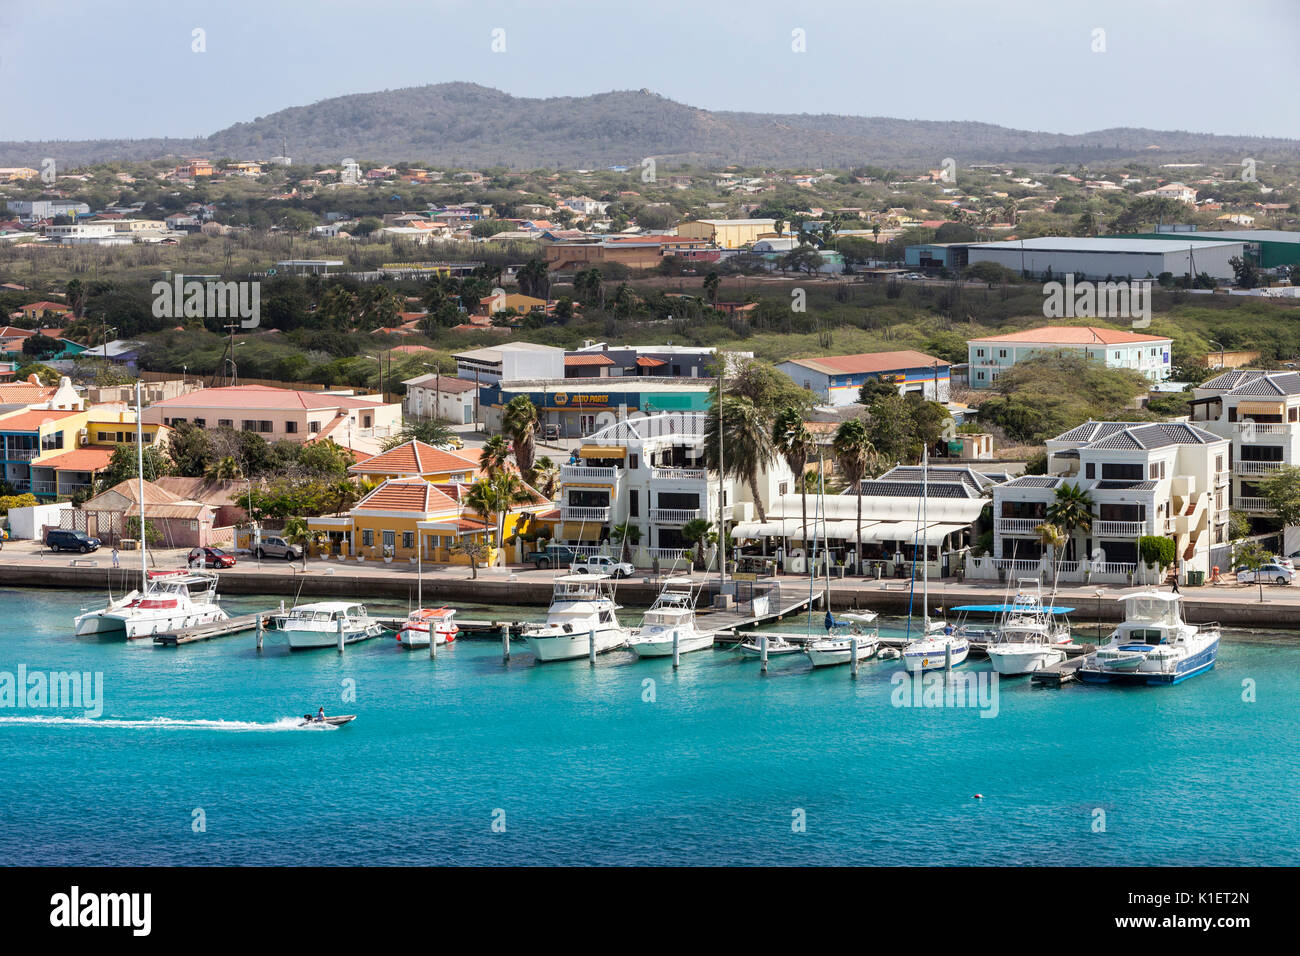 Kralendijk, Bonaire, Antille sottovento. Foto Stock